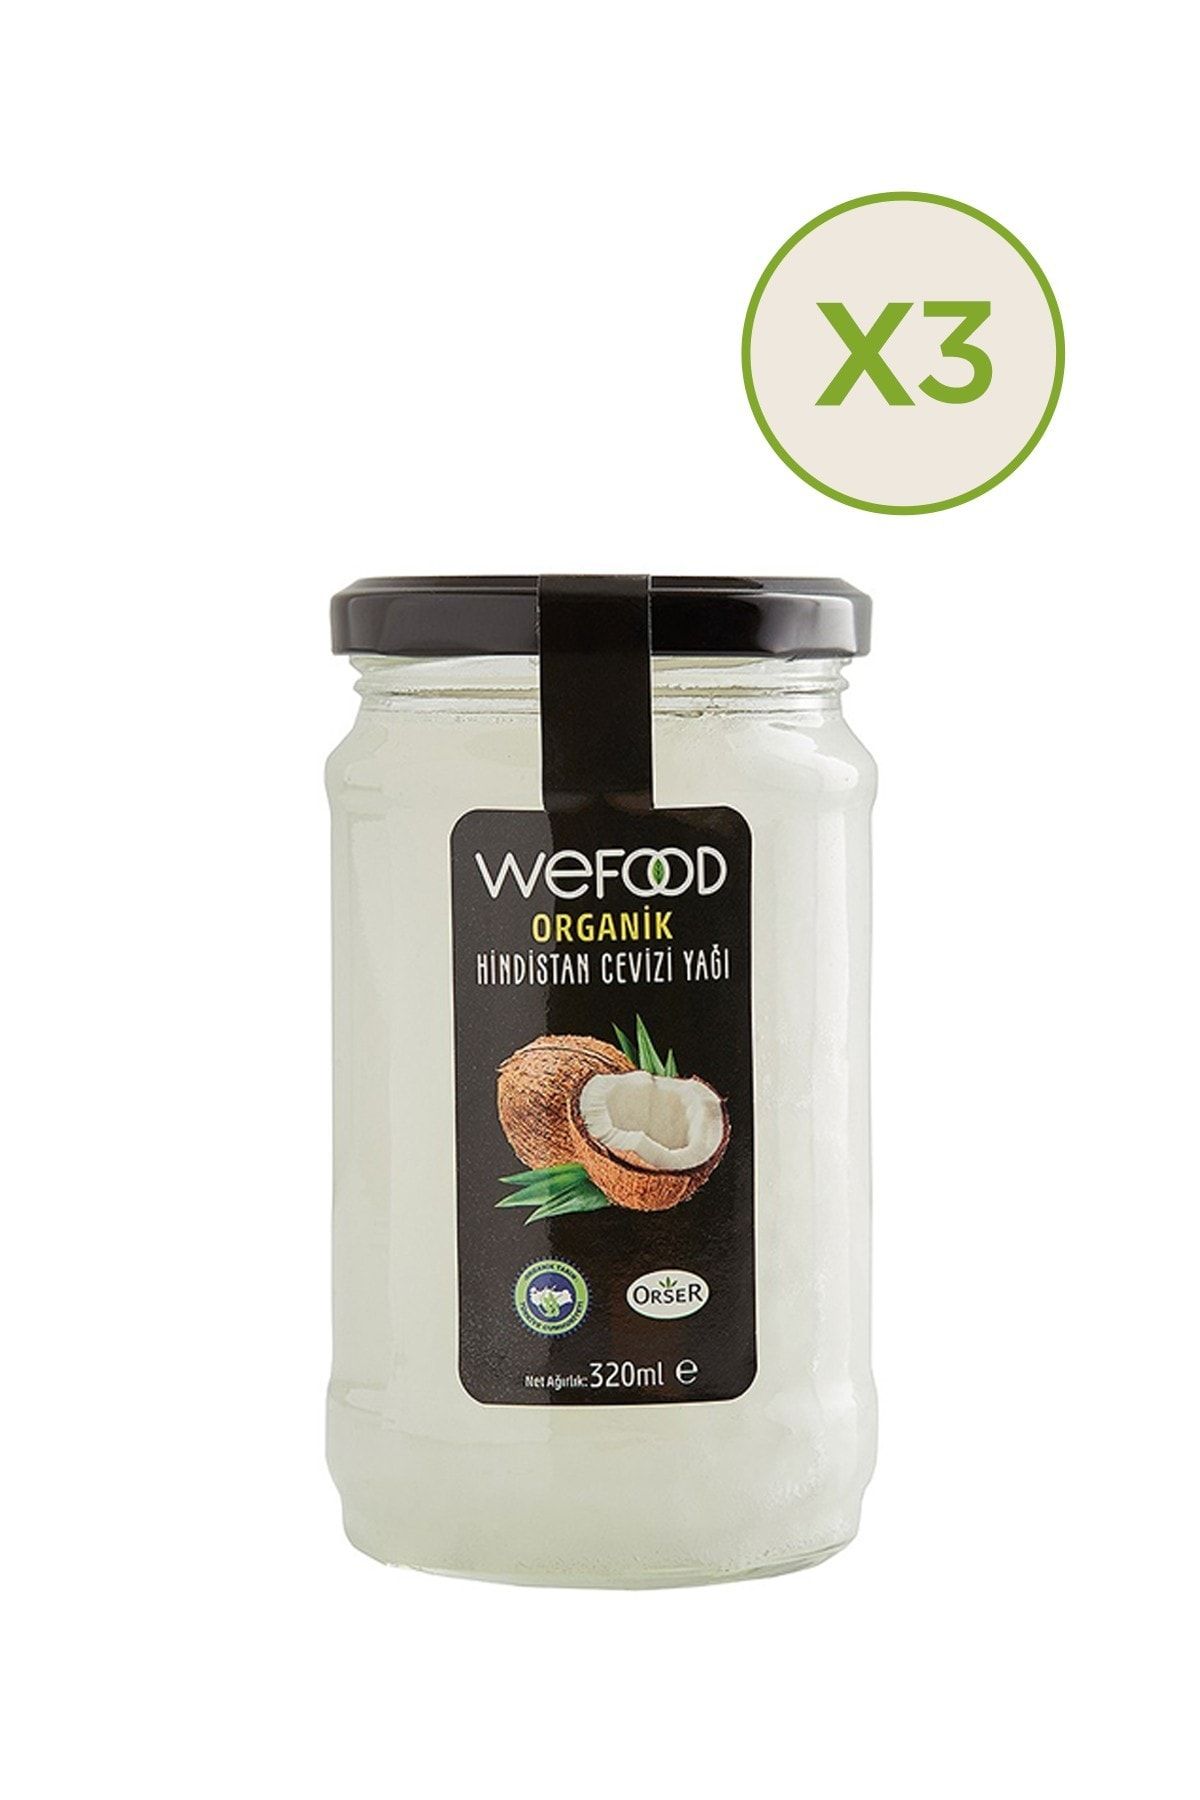 Wefood Organik Hindistan Cevizi Yağı 300 ml X 3